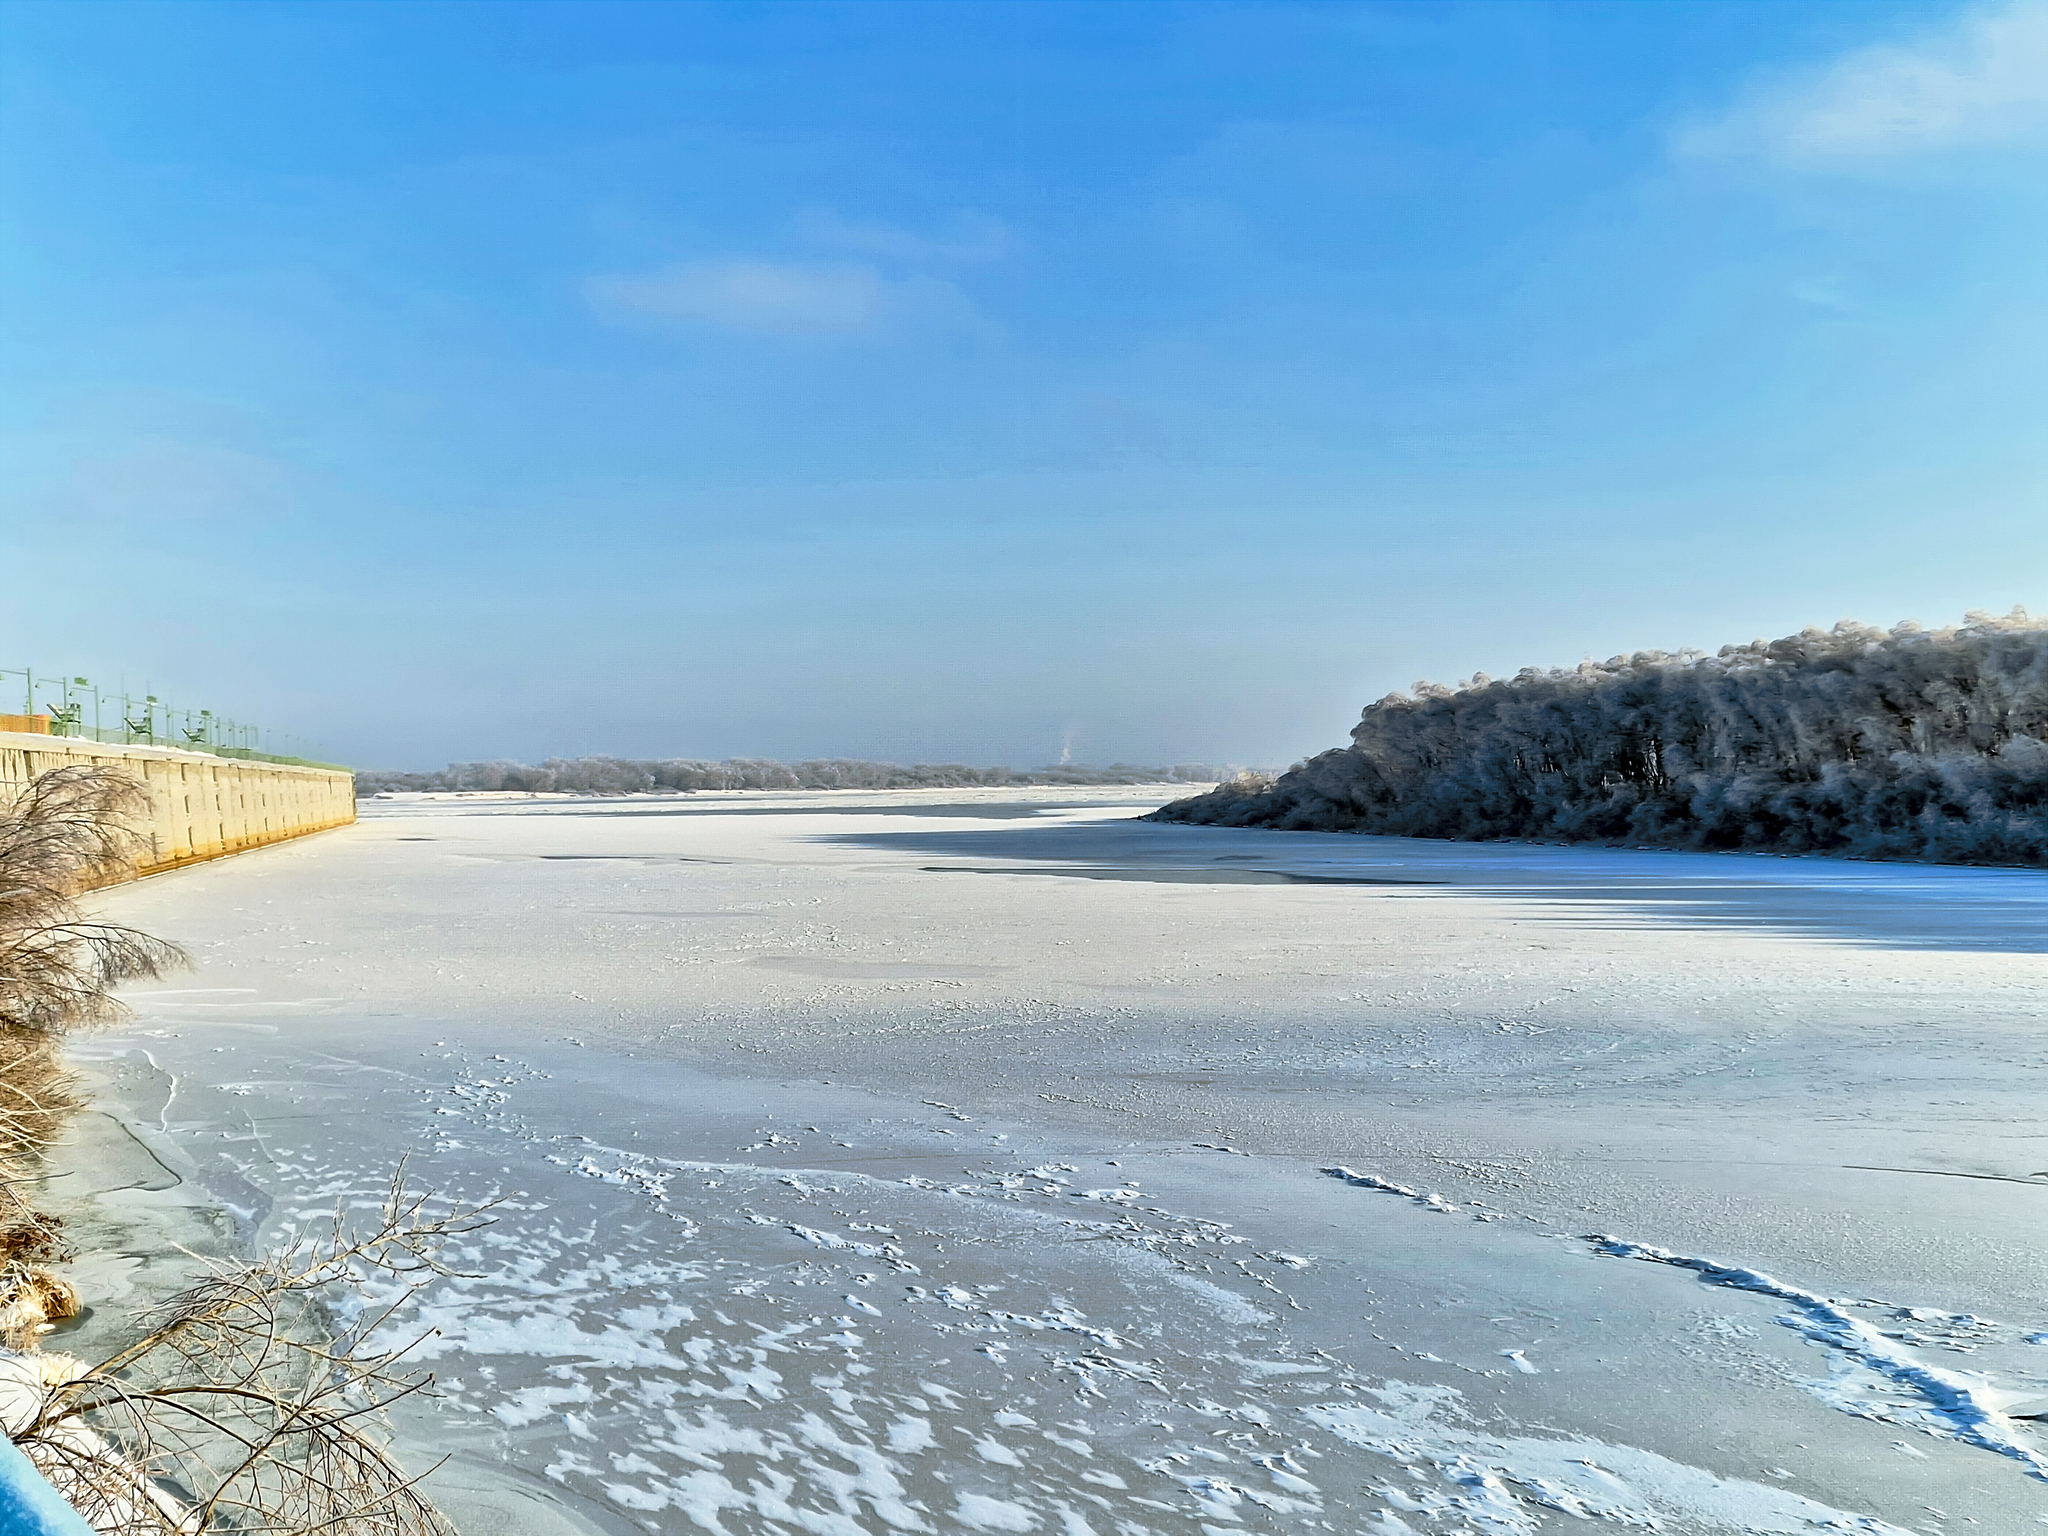 Sunny day on Strelka (Nizhny Novgorod) - My, Nizhny Novgorod, Arrow, Winter, freezing, beauty, The photo